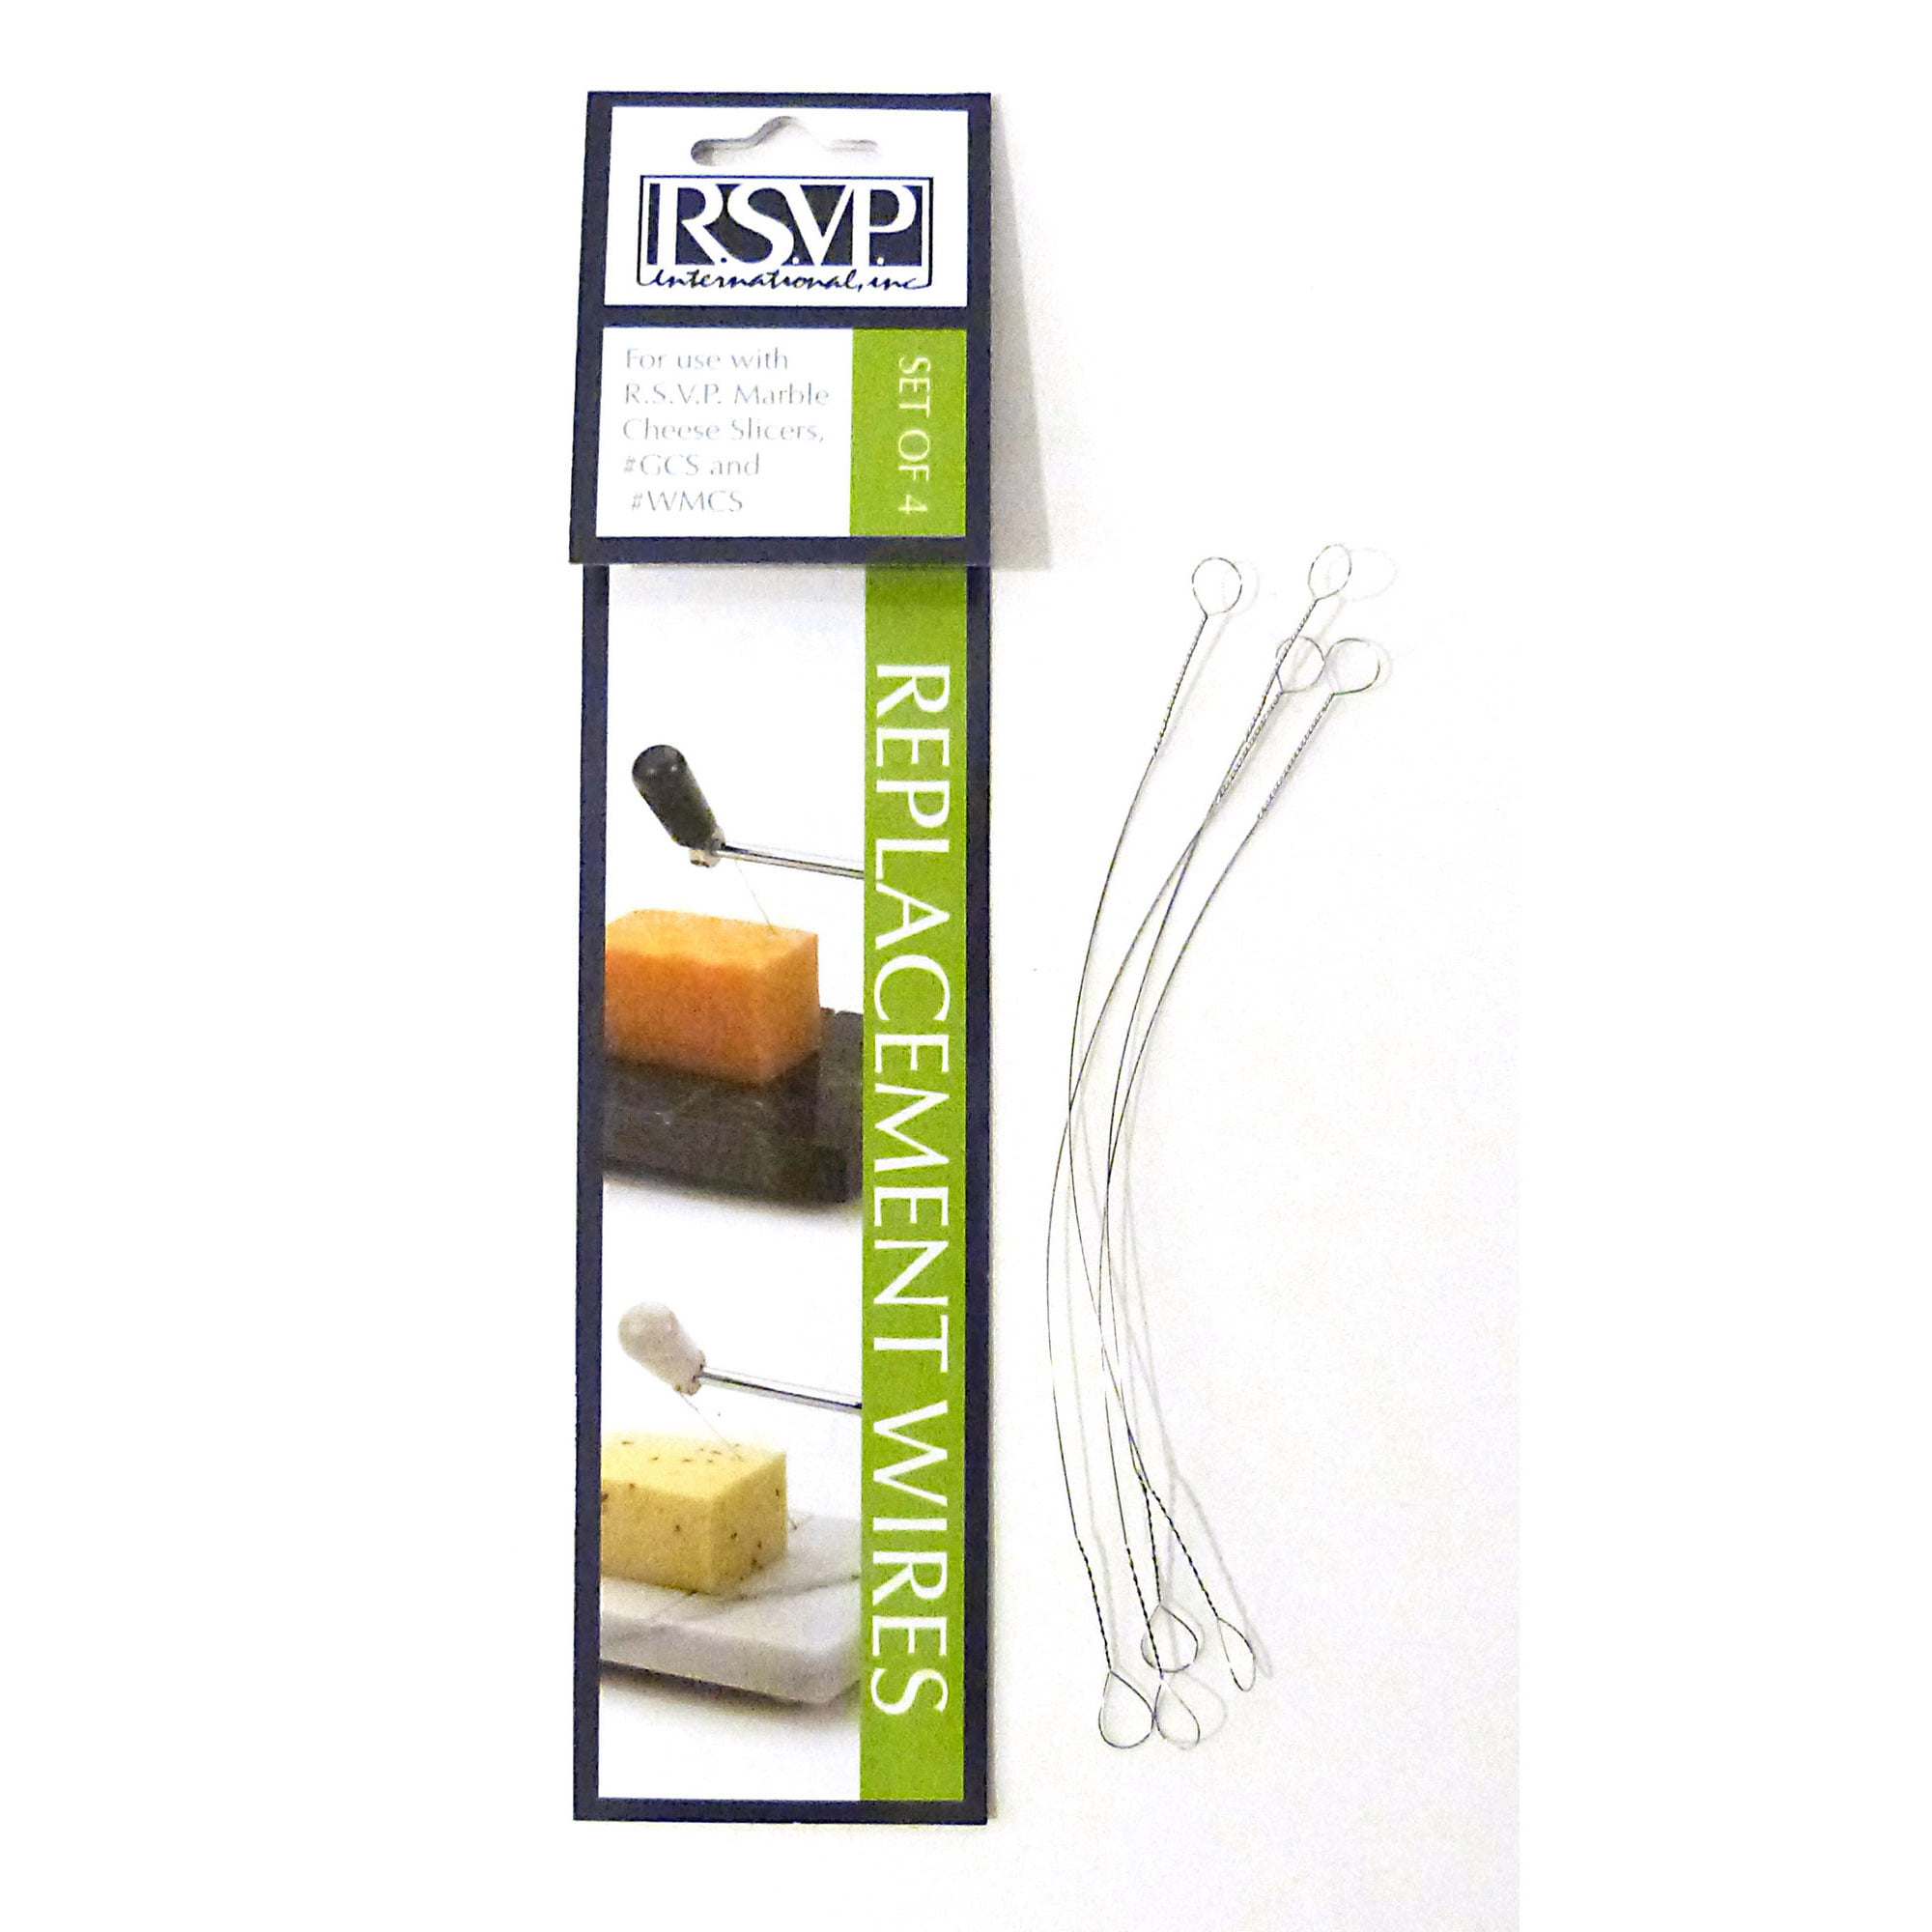 RSVP - White Marble Cheese Slicer